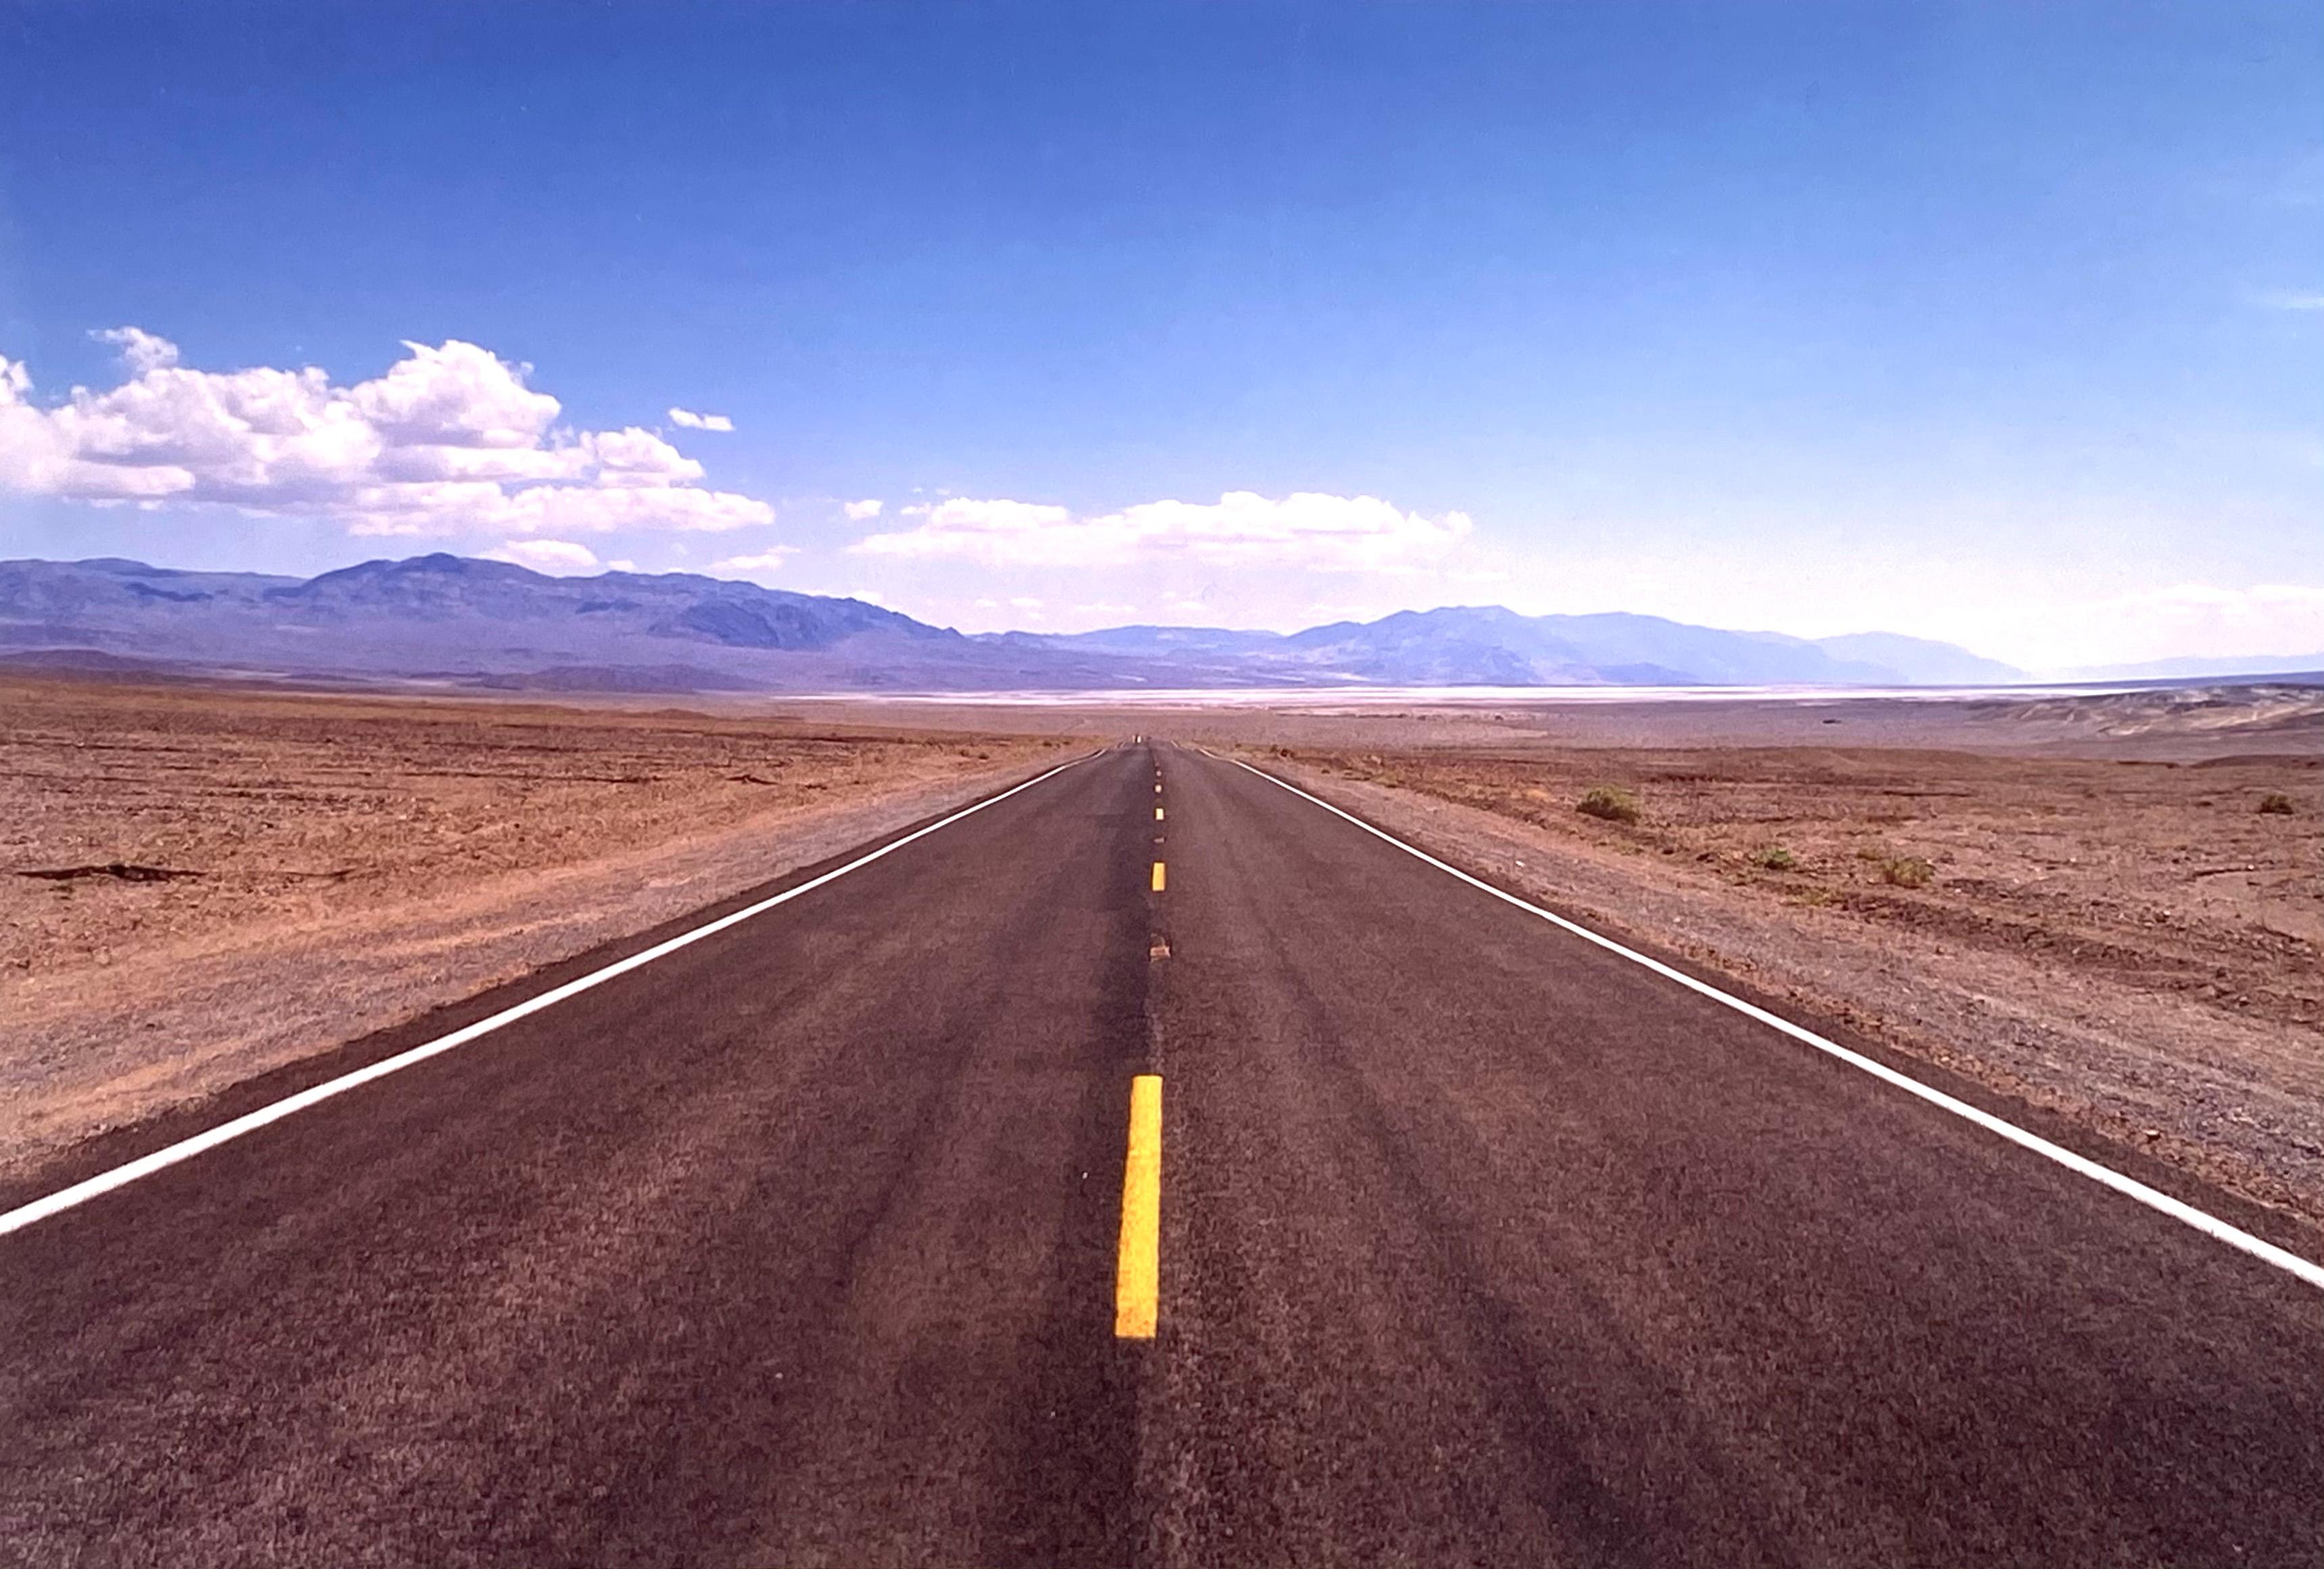 The Road to Death Valley, Mojave Desert, Kalifornien - Landschaftsfarbenes Foto